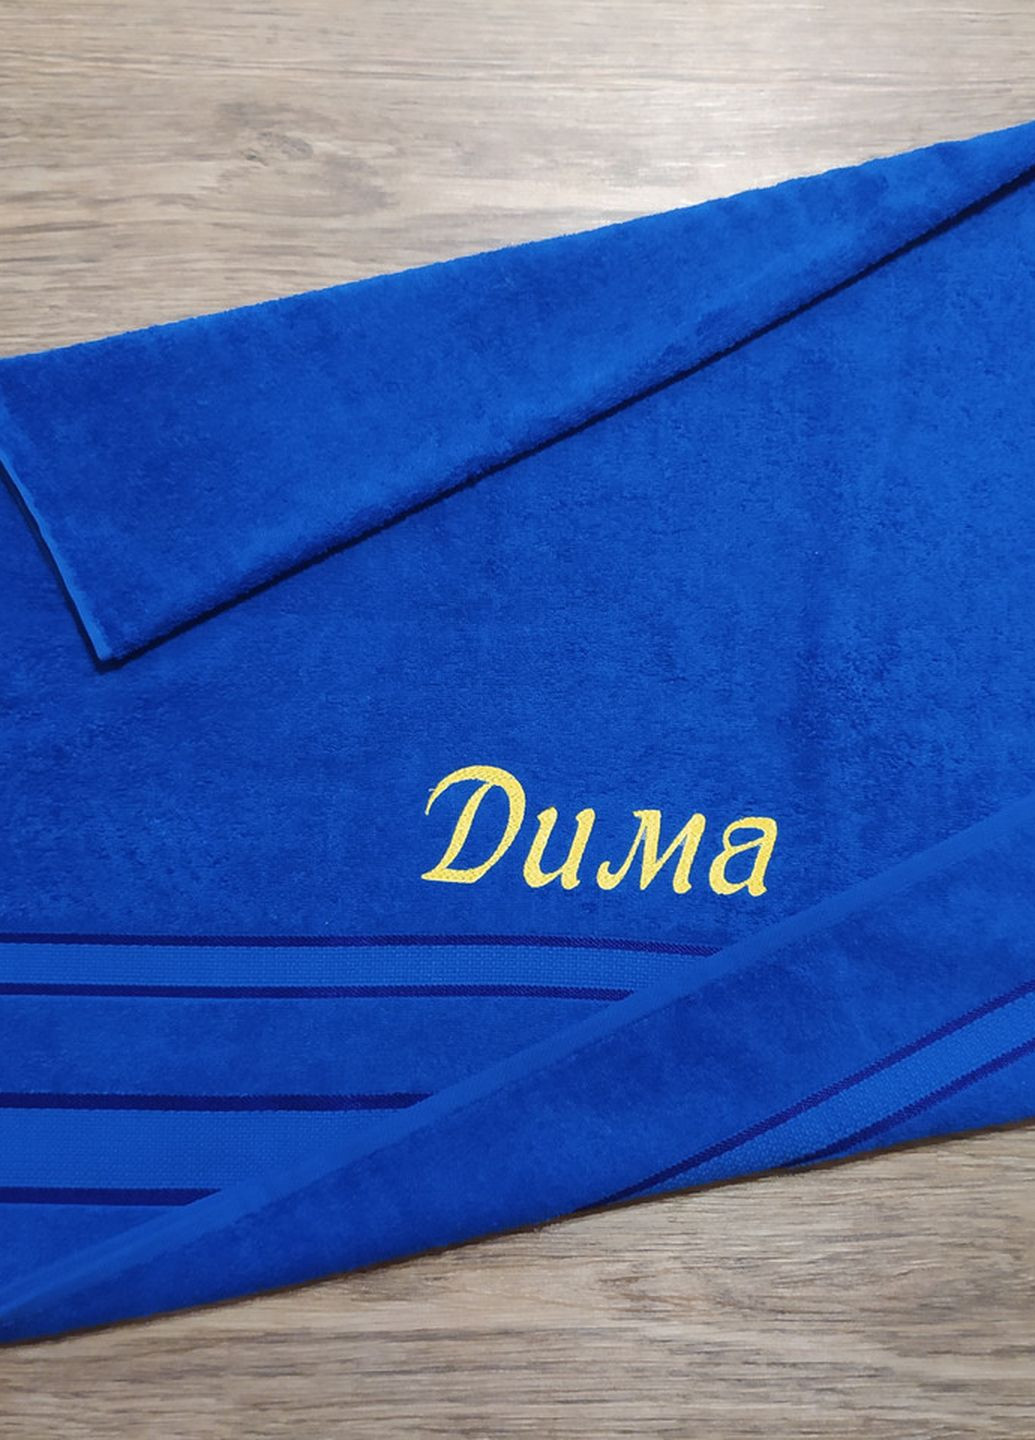 No Brand полотенце с именной вышивкой махровое банное 70*140 синий дмитрий 04261 однотонный синий производство - Украина